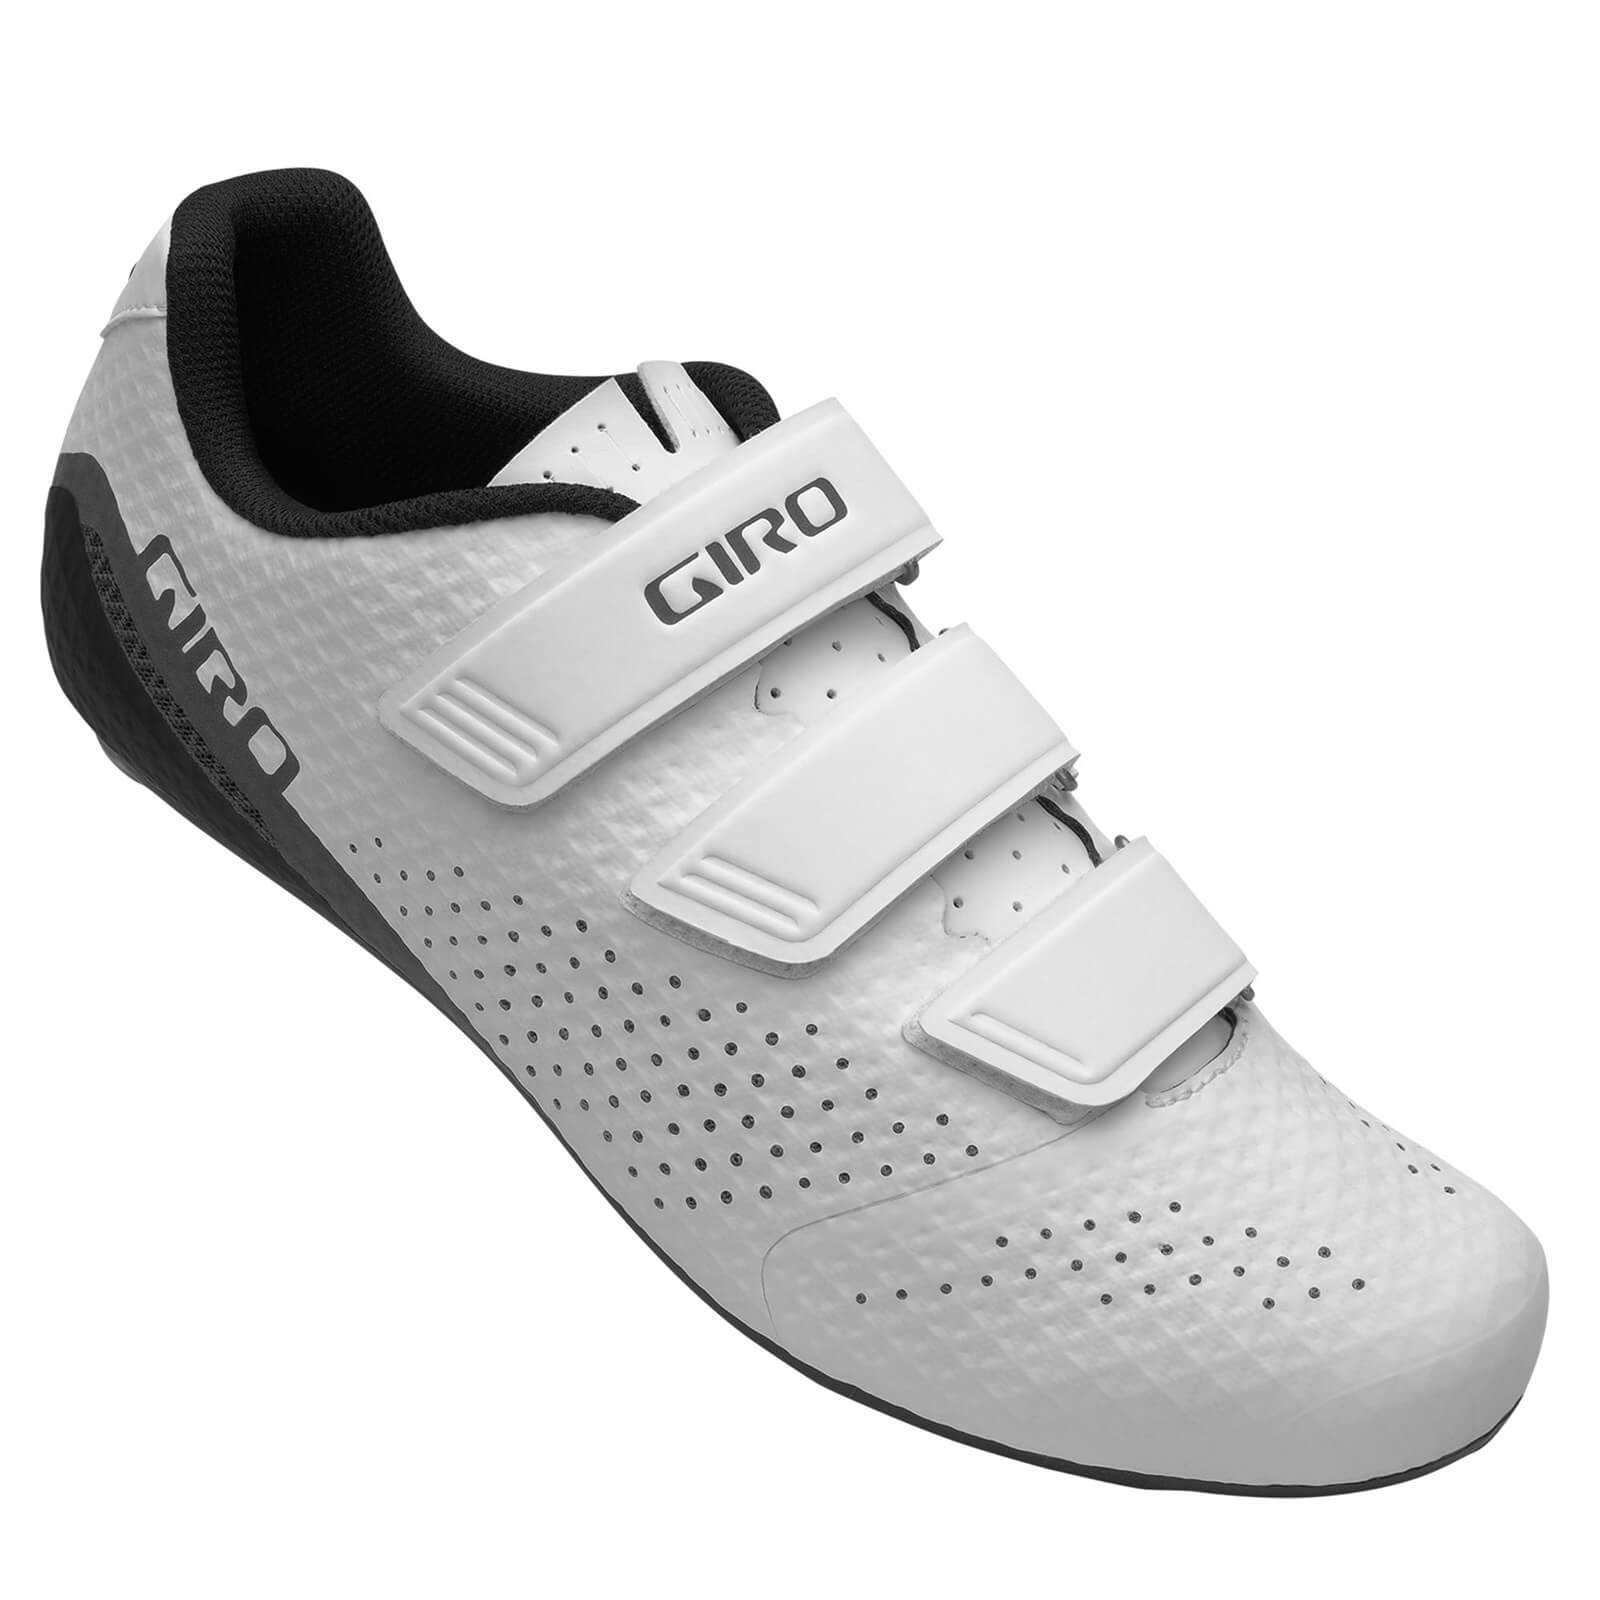 Giro Stylus Road Shoes - EU 45 - White